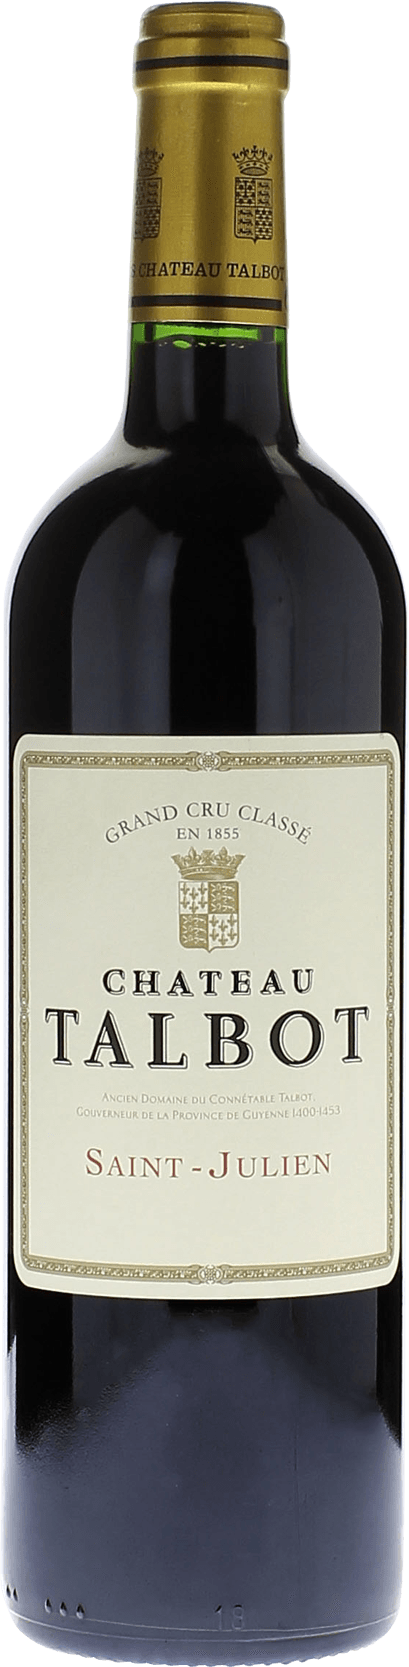 Talbot 1982 4me Grand cru class Saint-Julien, Bordeaux rouge